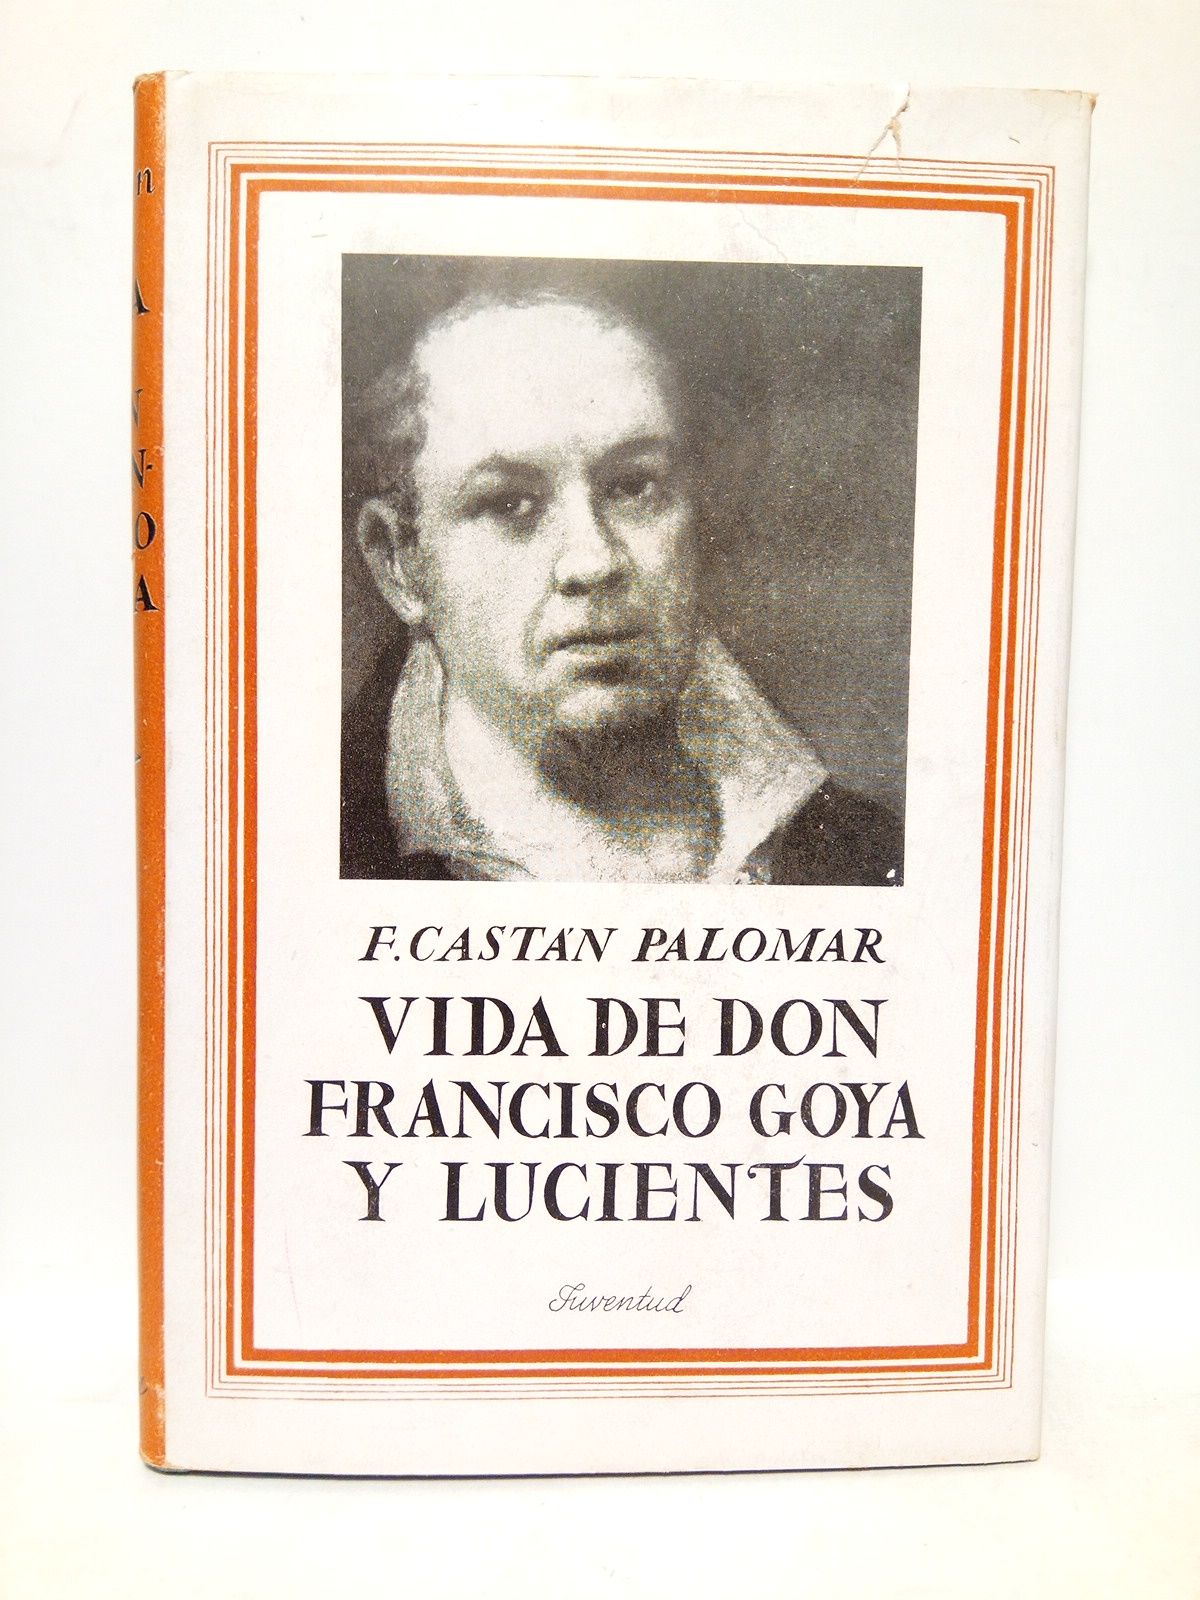 CASTAN PALOMAR, Fernando - Vida de Don Francisco Goya y Lucientes